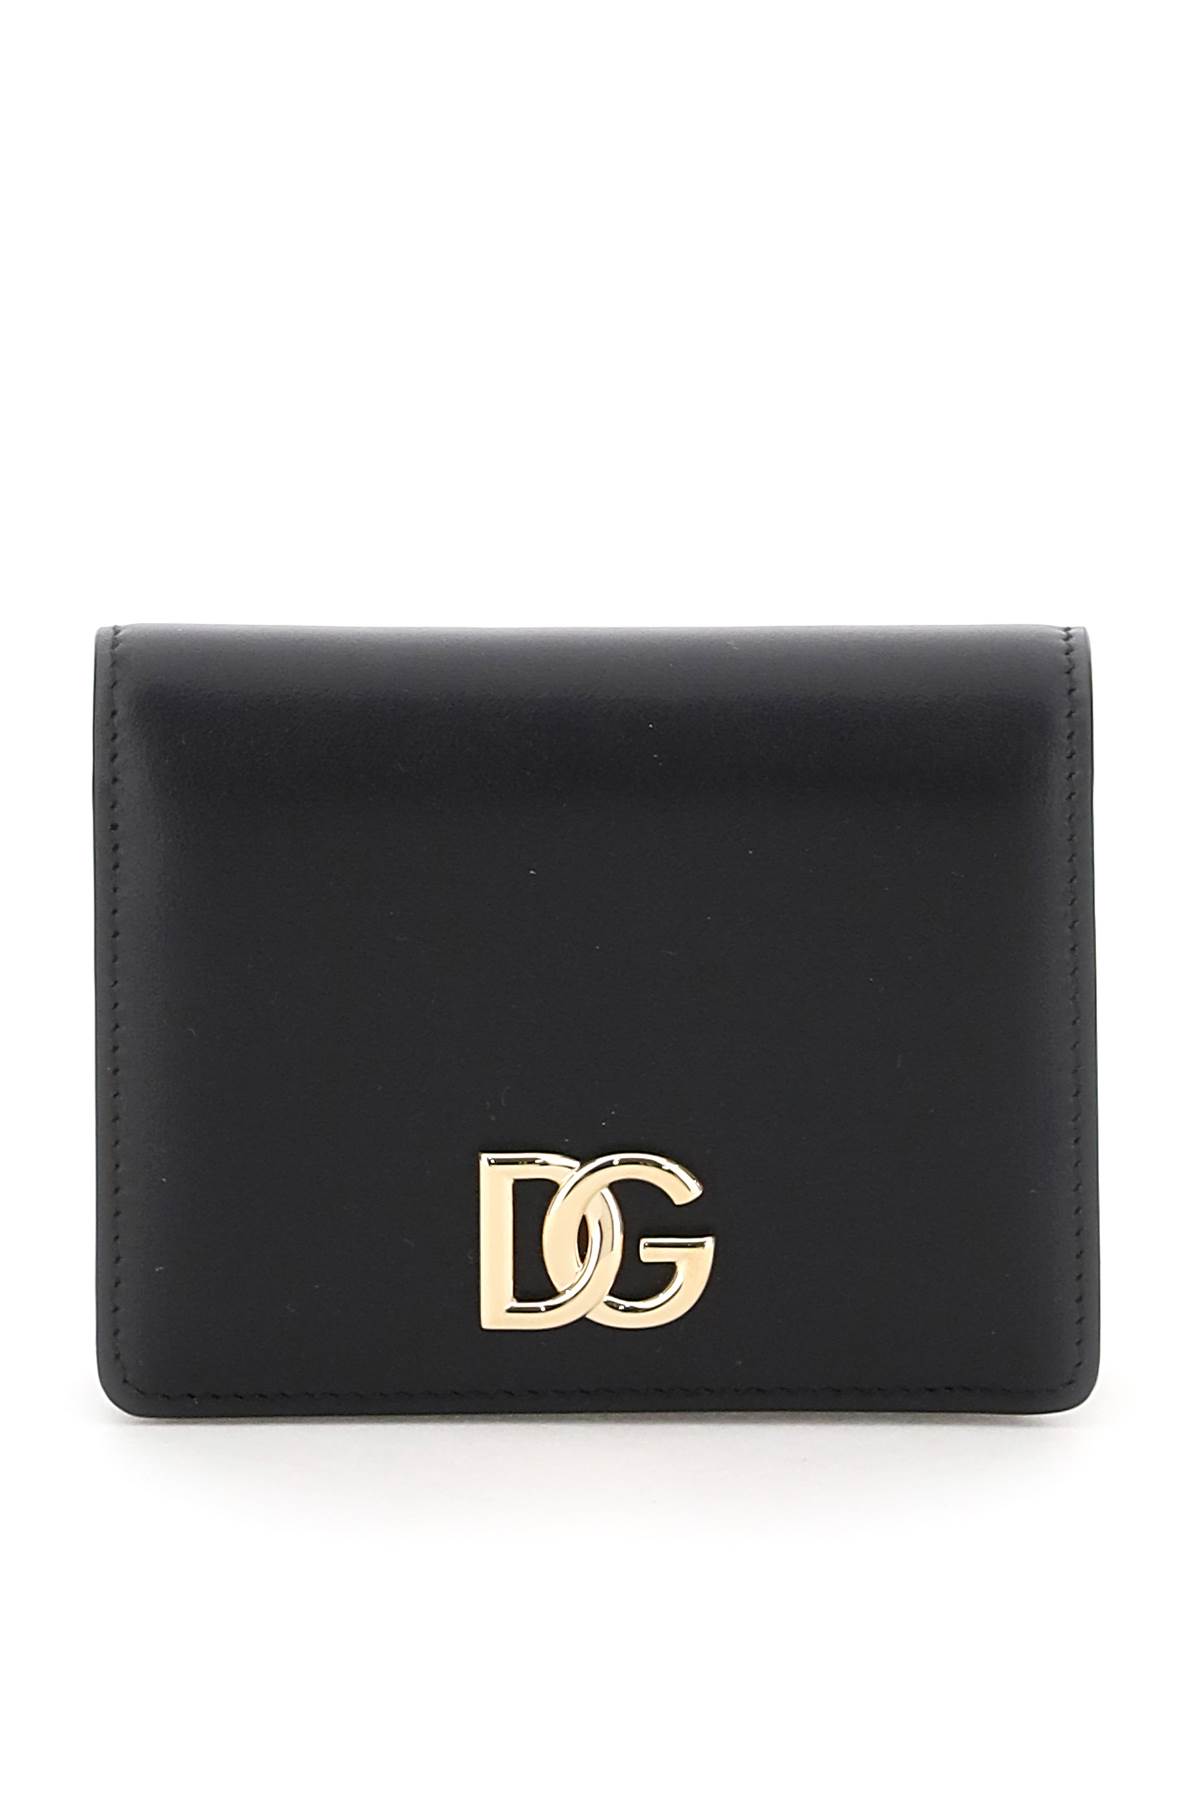 Dolce & Gabbana Business Wallet Portfolio